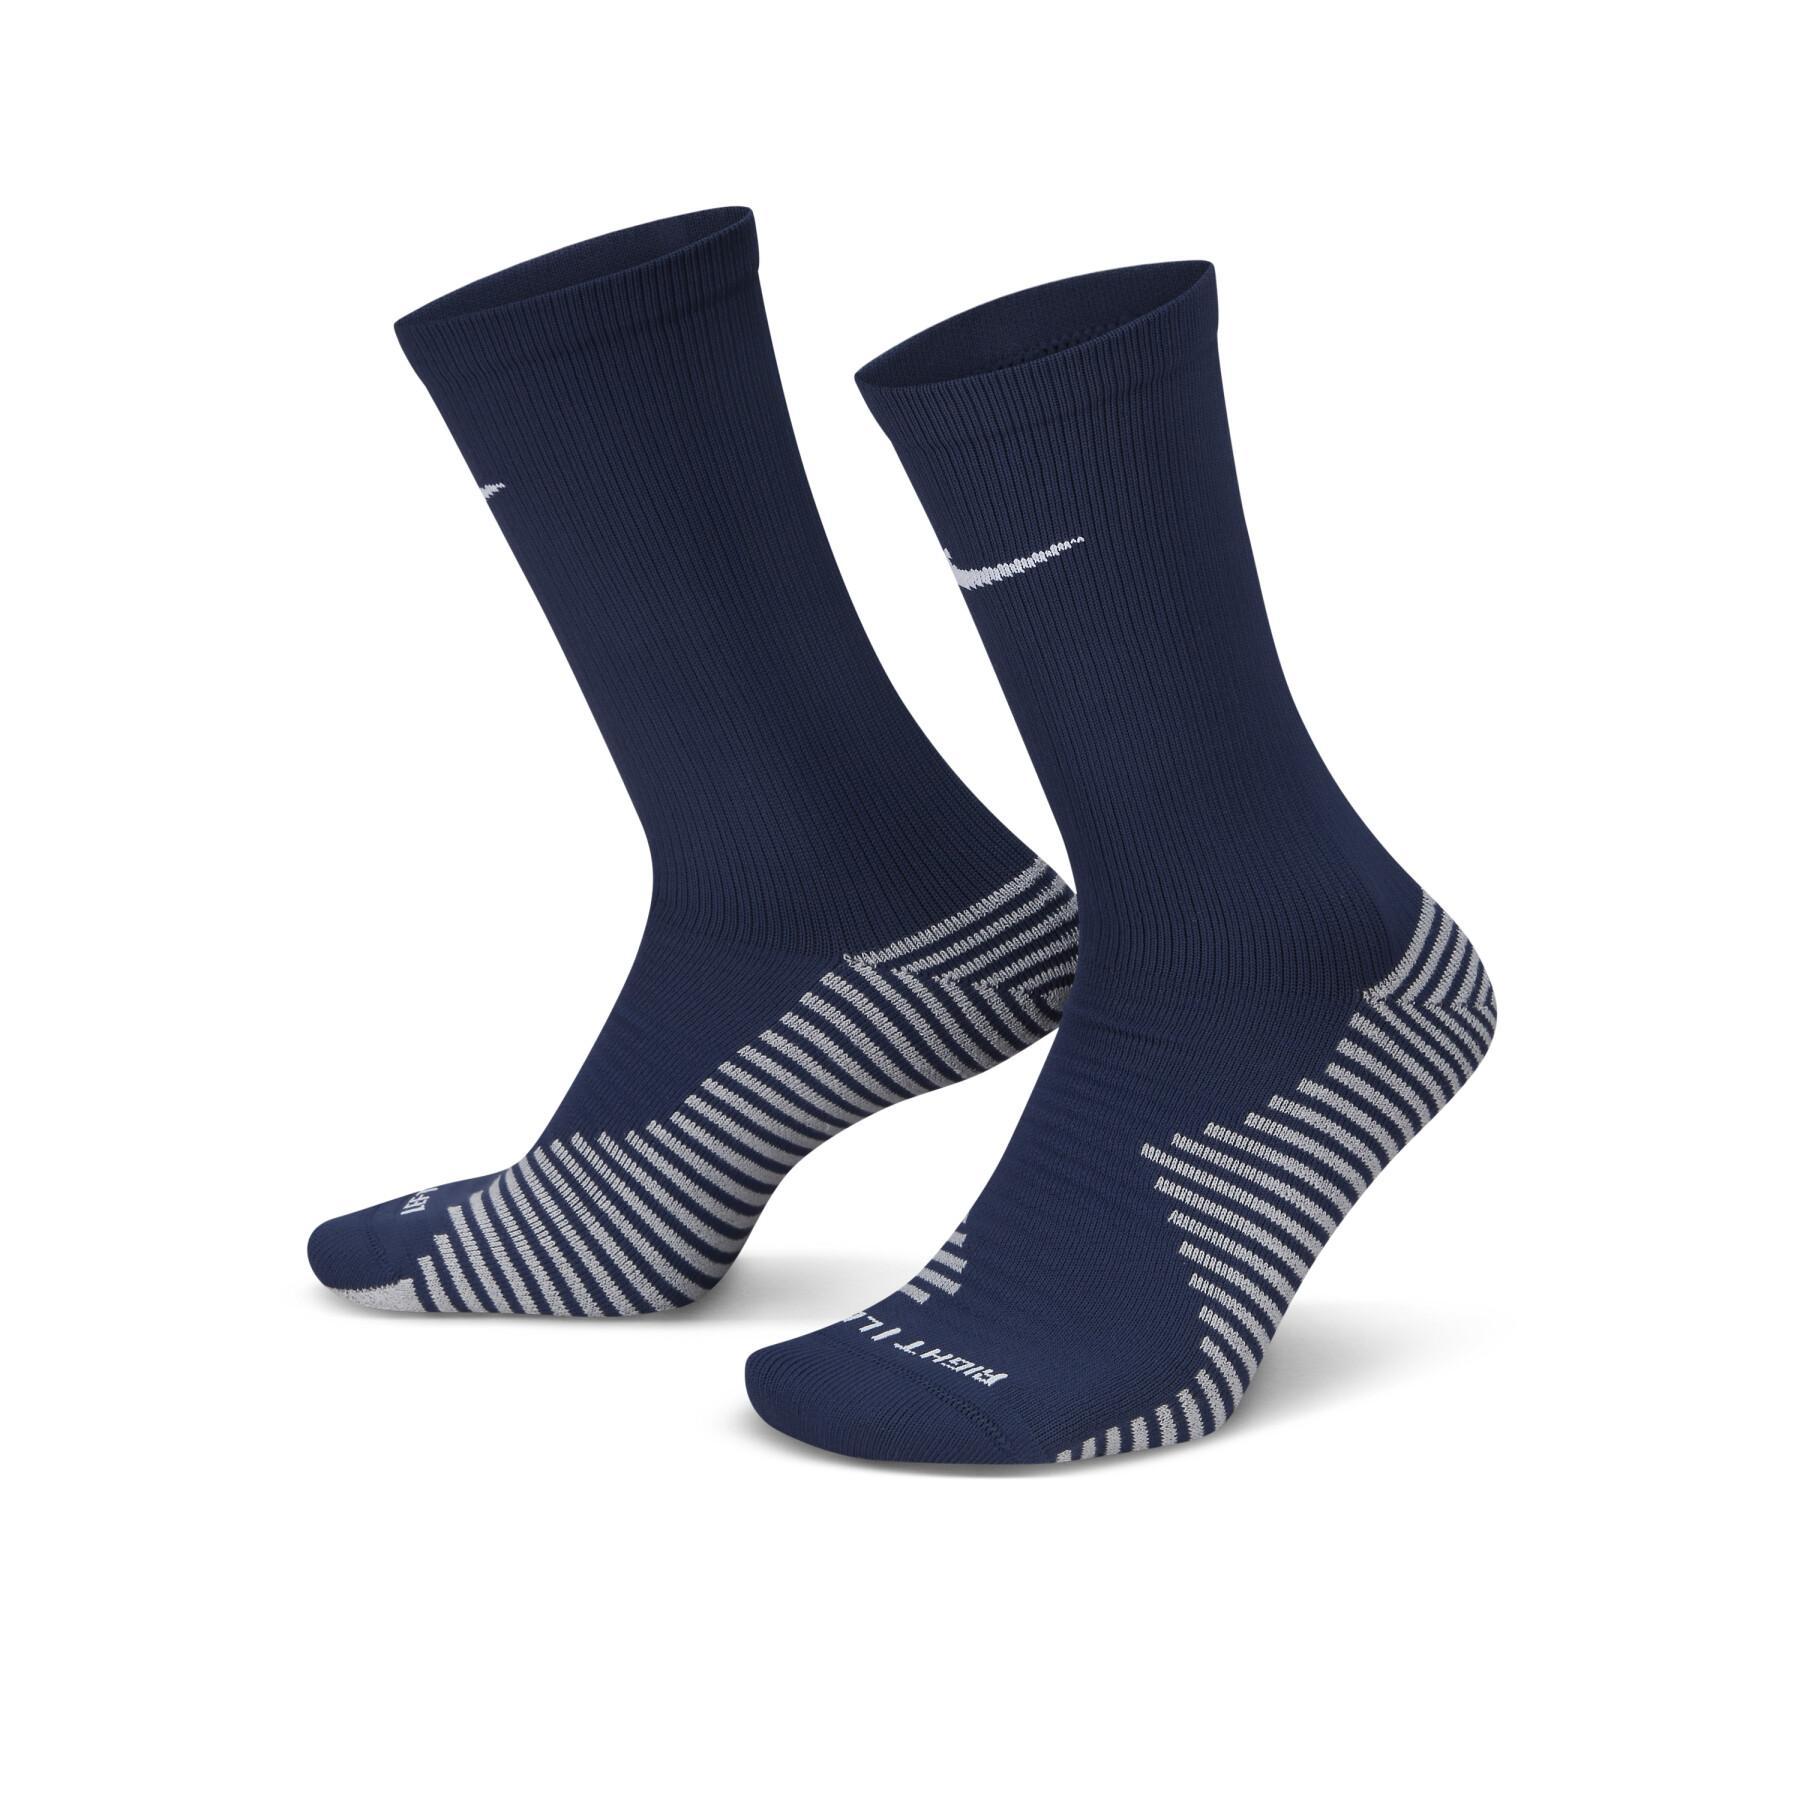 Socks Nike Strike - Nike - Brands - Equipments